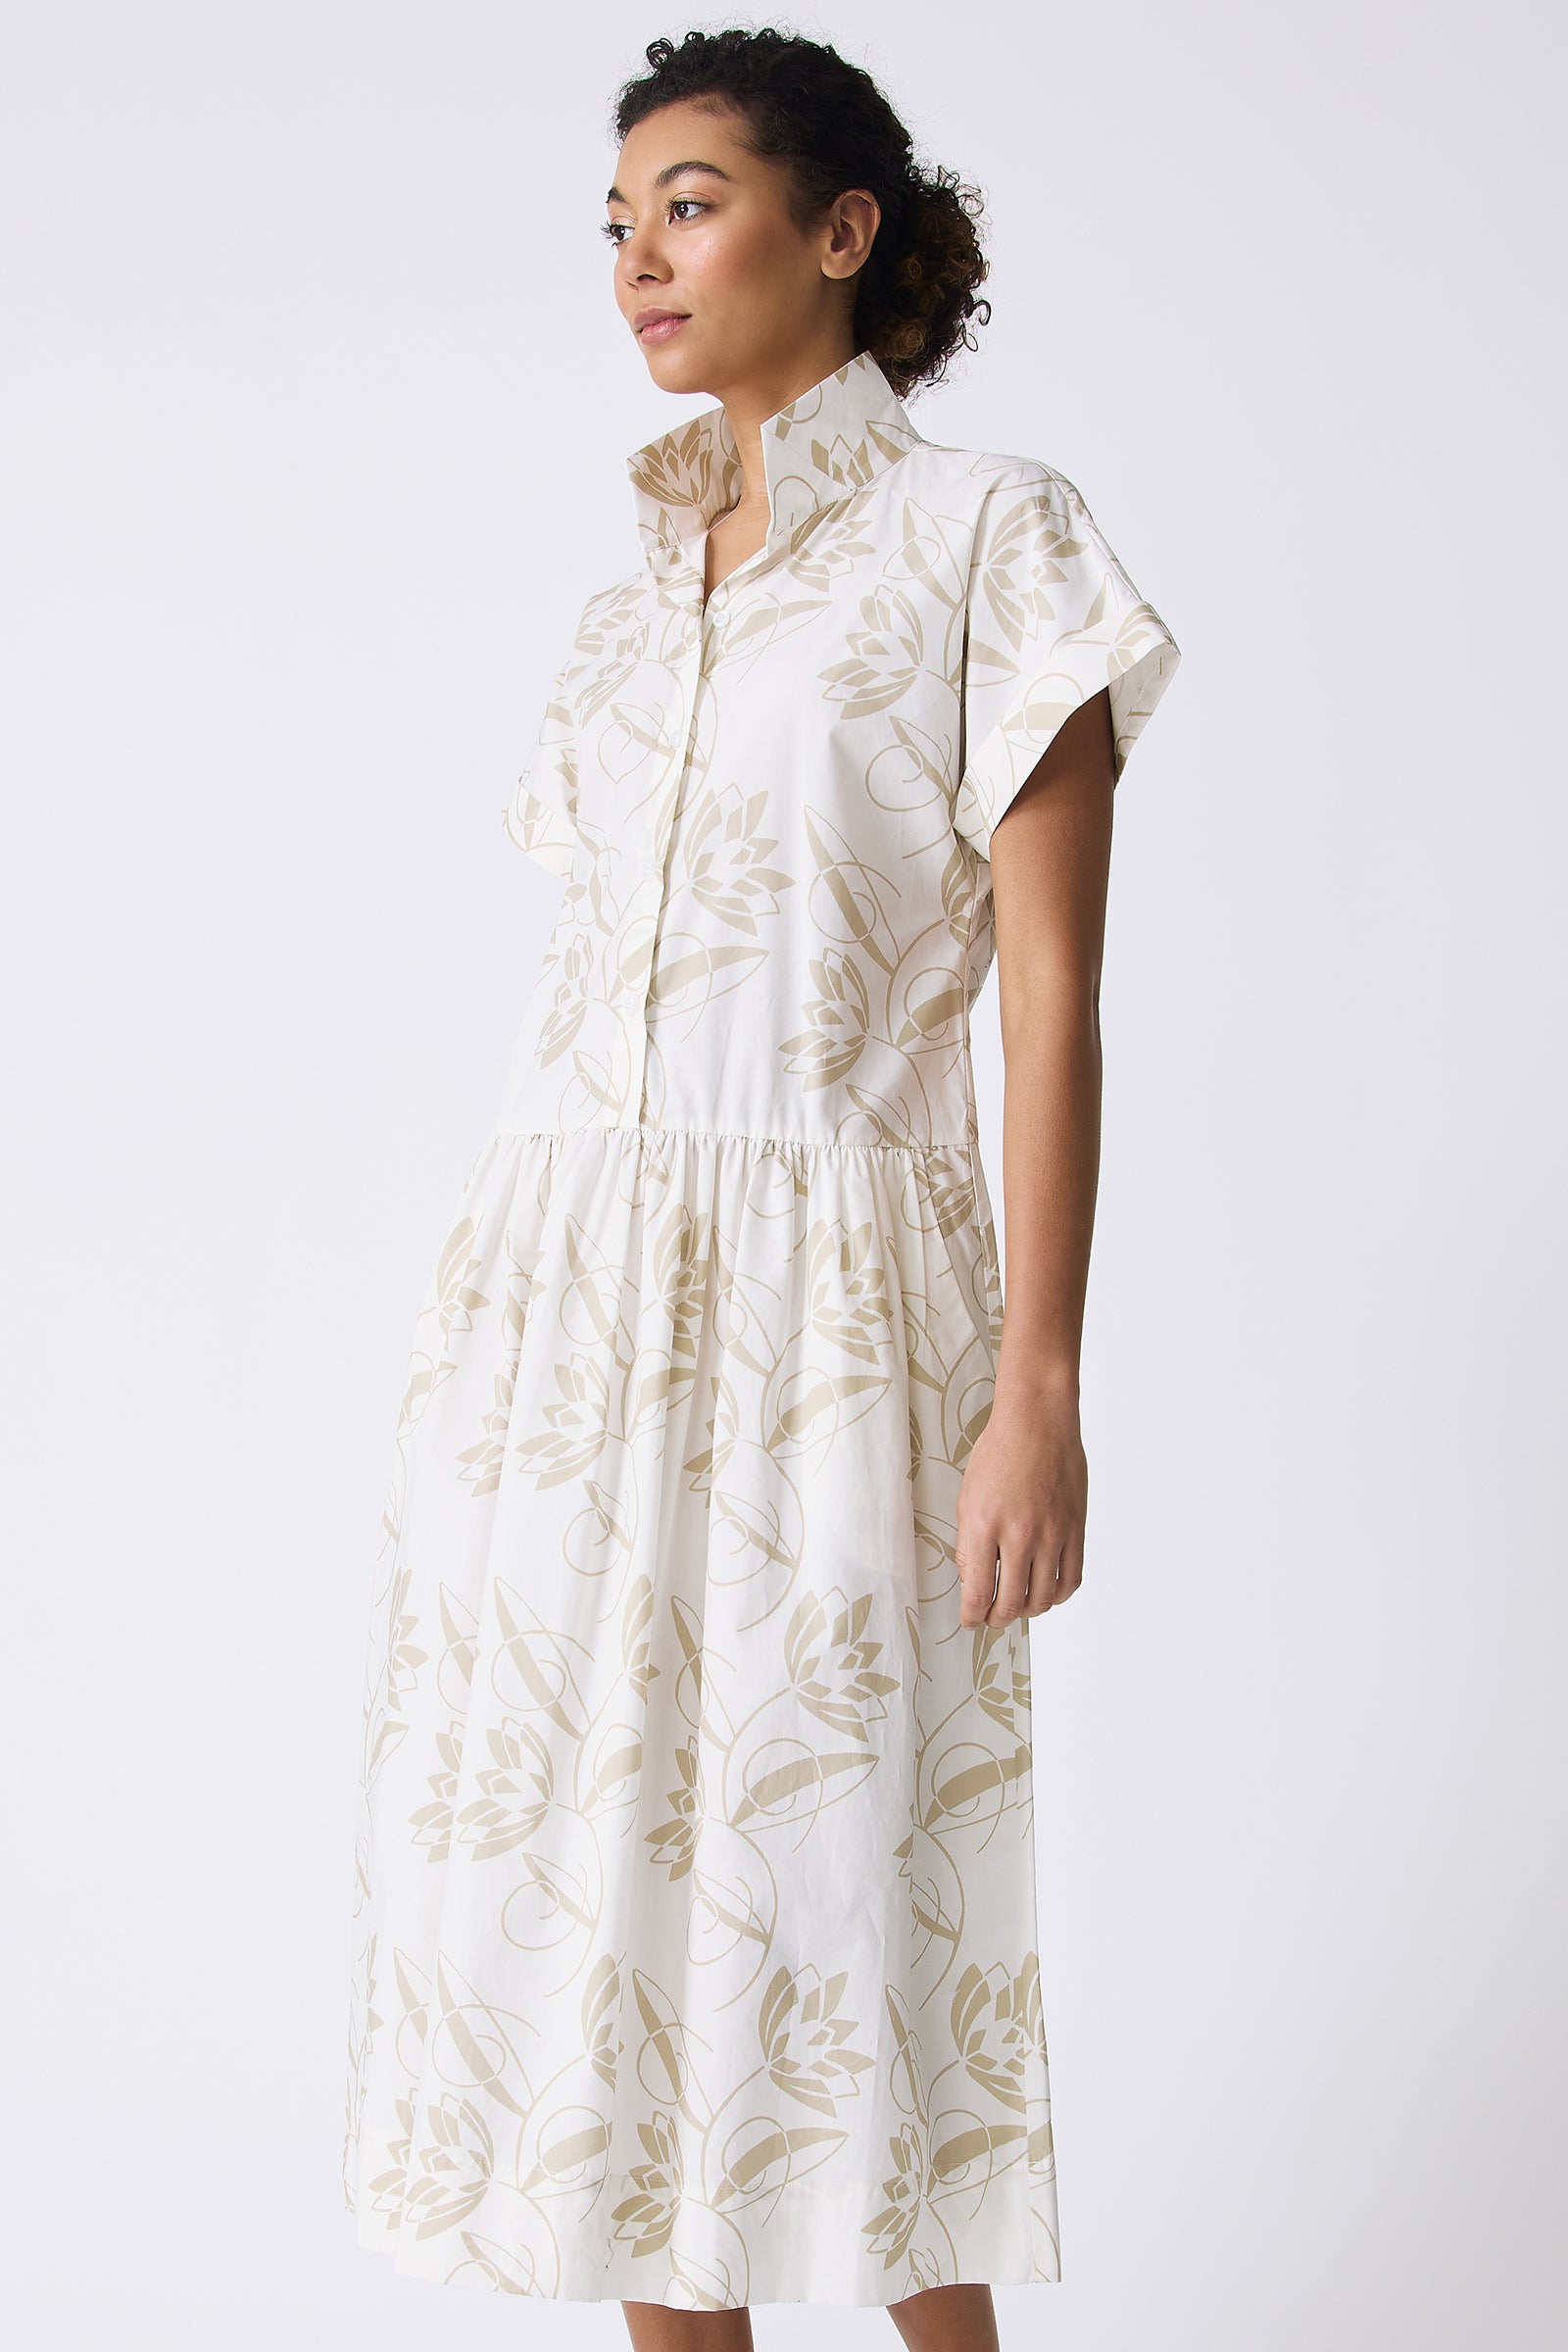 Kal Rieman Tanya Shirt Dress in Lotus Print on model front view